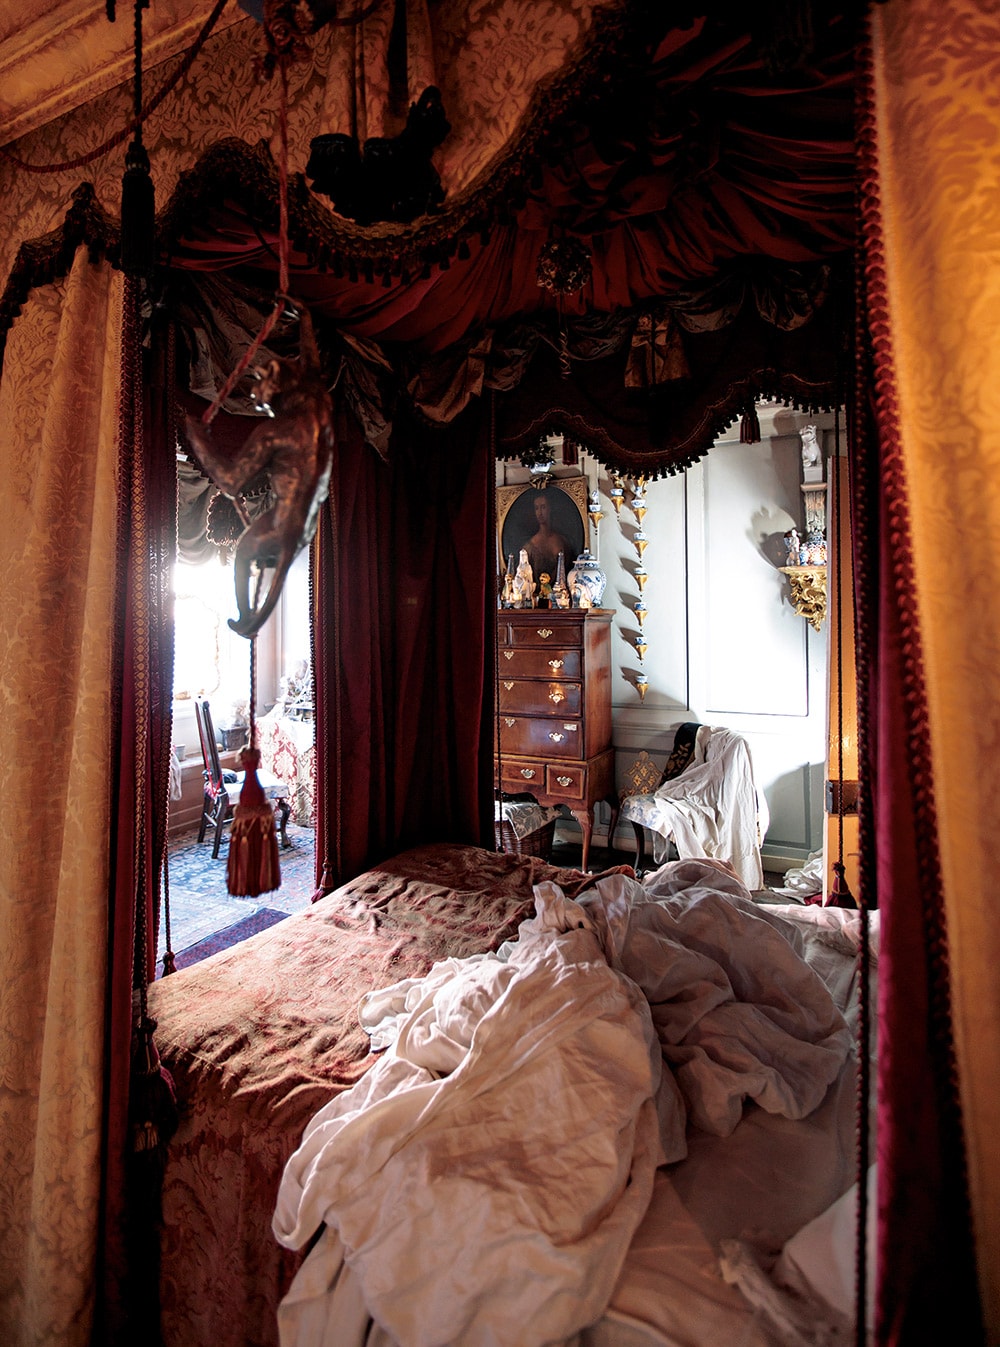 アイザックの息子の妻エリザベスが起き上がったばかり、という様相の寝室。